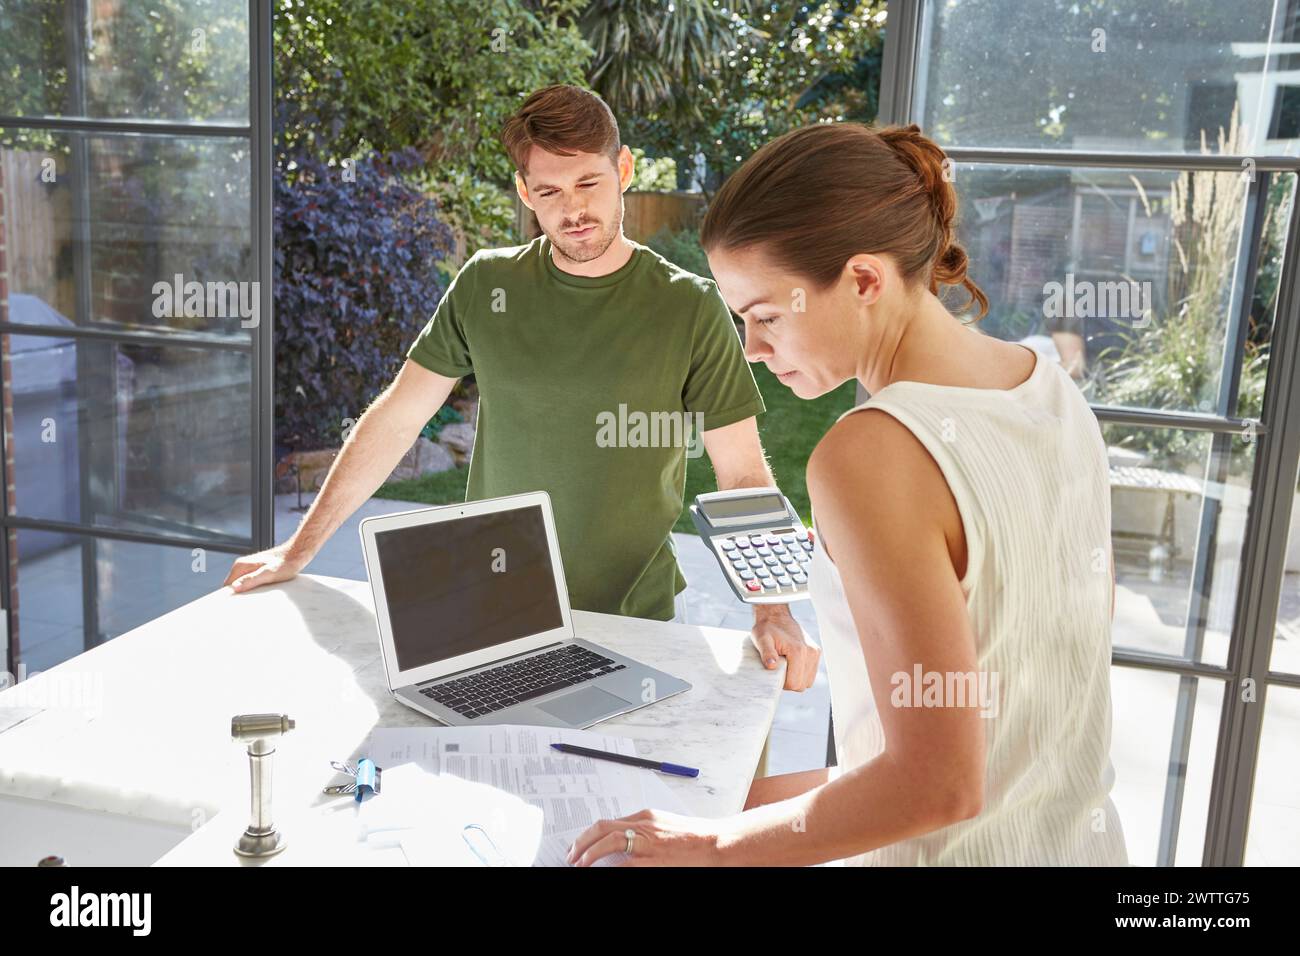 Deux personnes travaillant ensemble à une table avec un ordinateur portable Banque D'Images